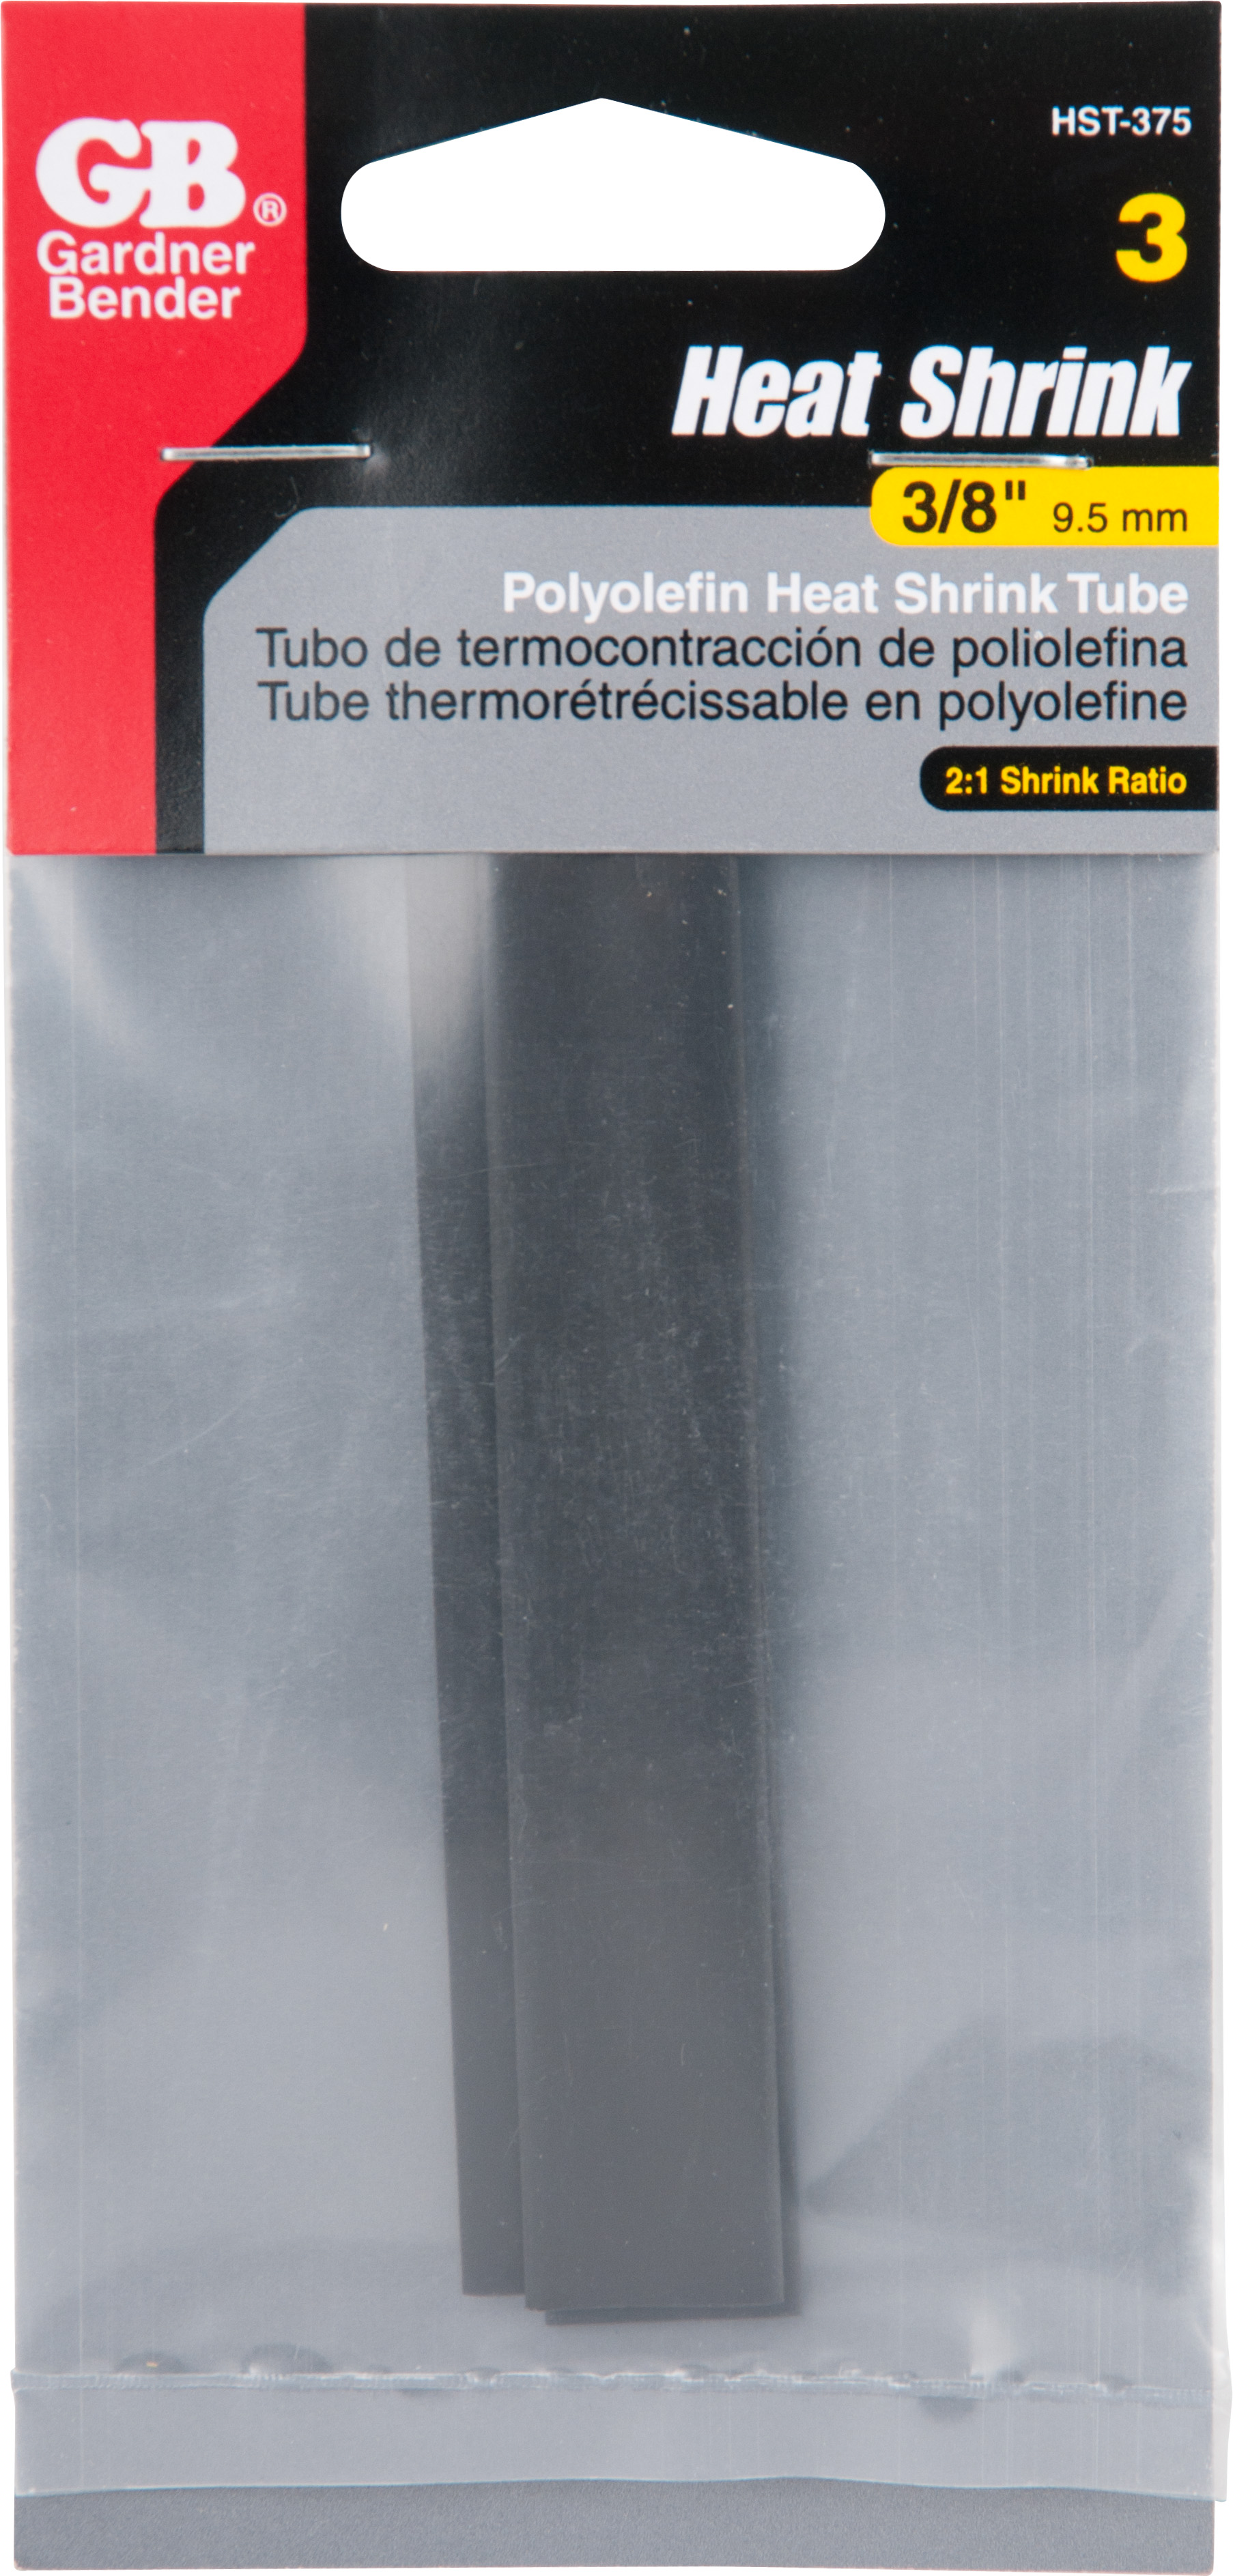 Euro driveshafts protección tubo set tubo interior/exterior tubo 75/80mm l2000mm ola de las articulaciones